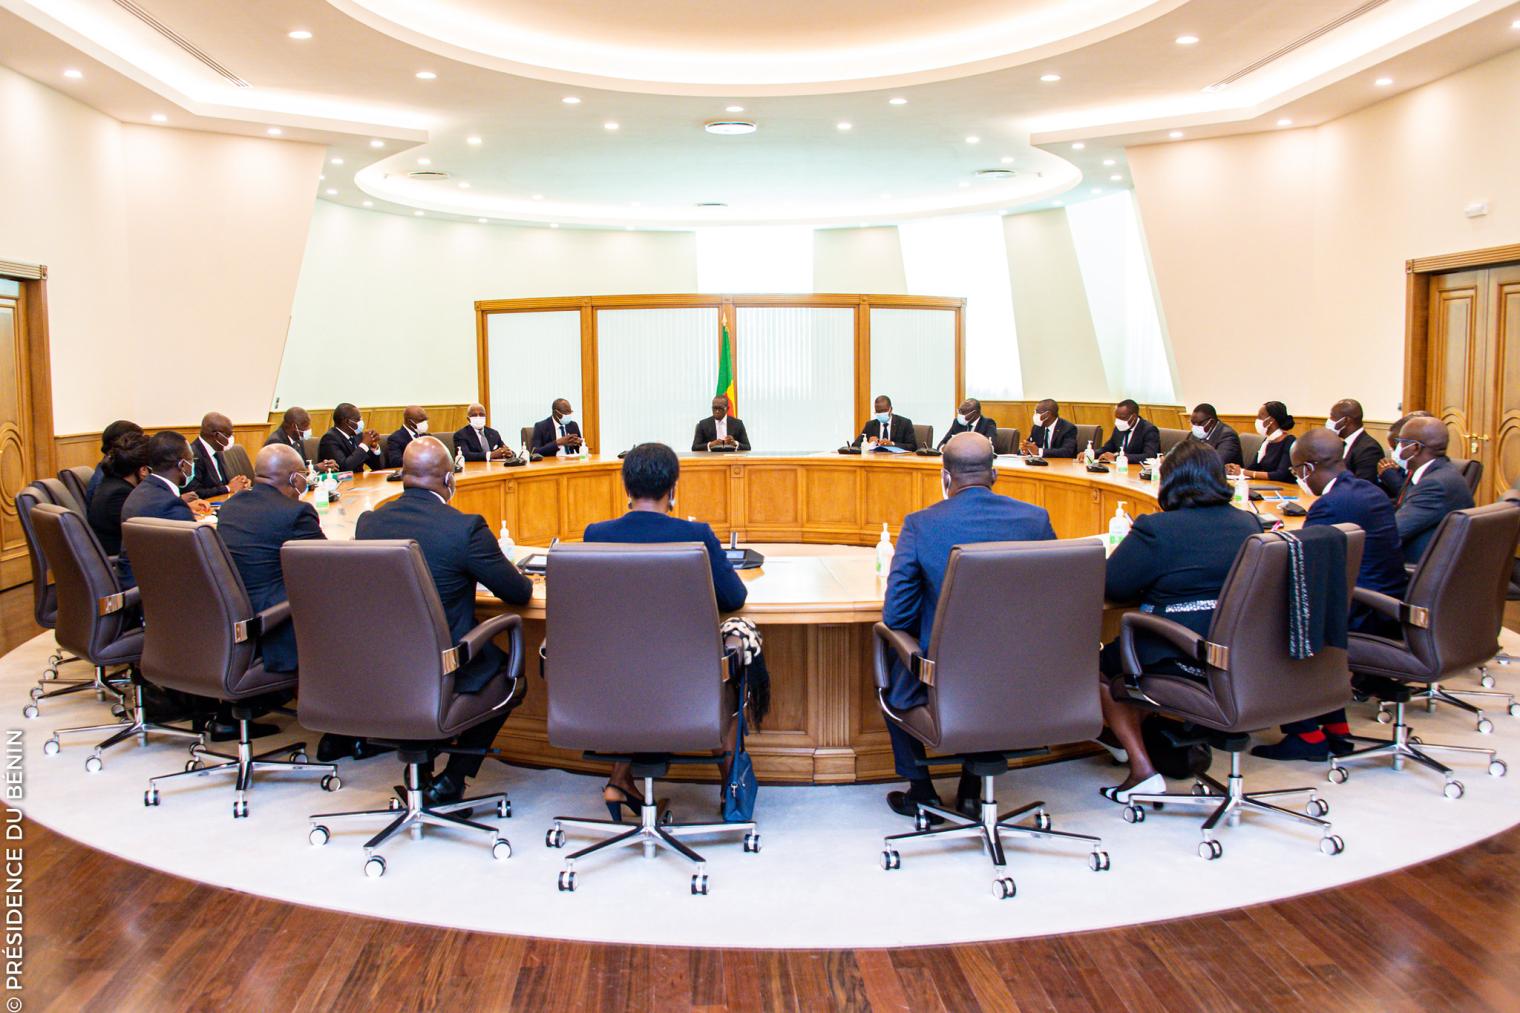 Bénin – Conseil des ministres : compte rendu de la session du 1er mars 2023